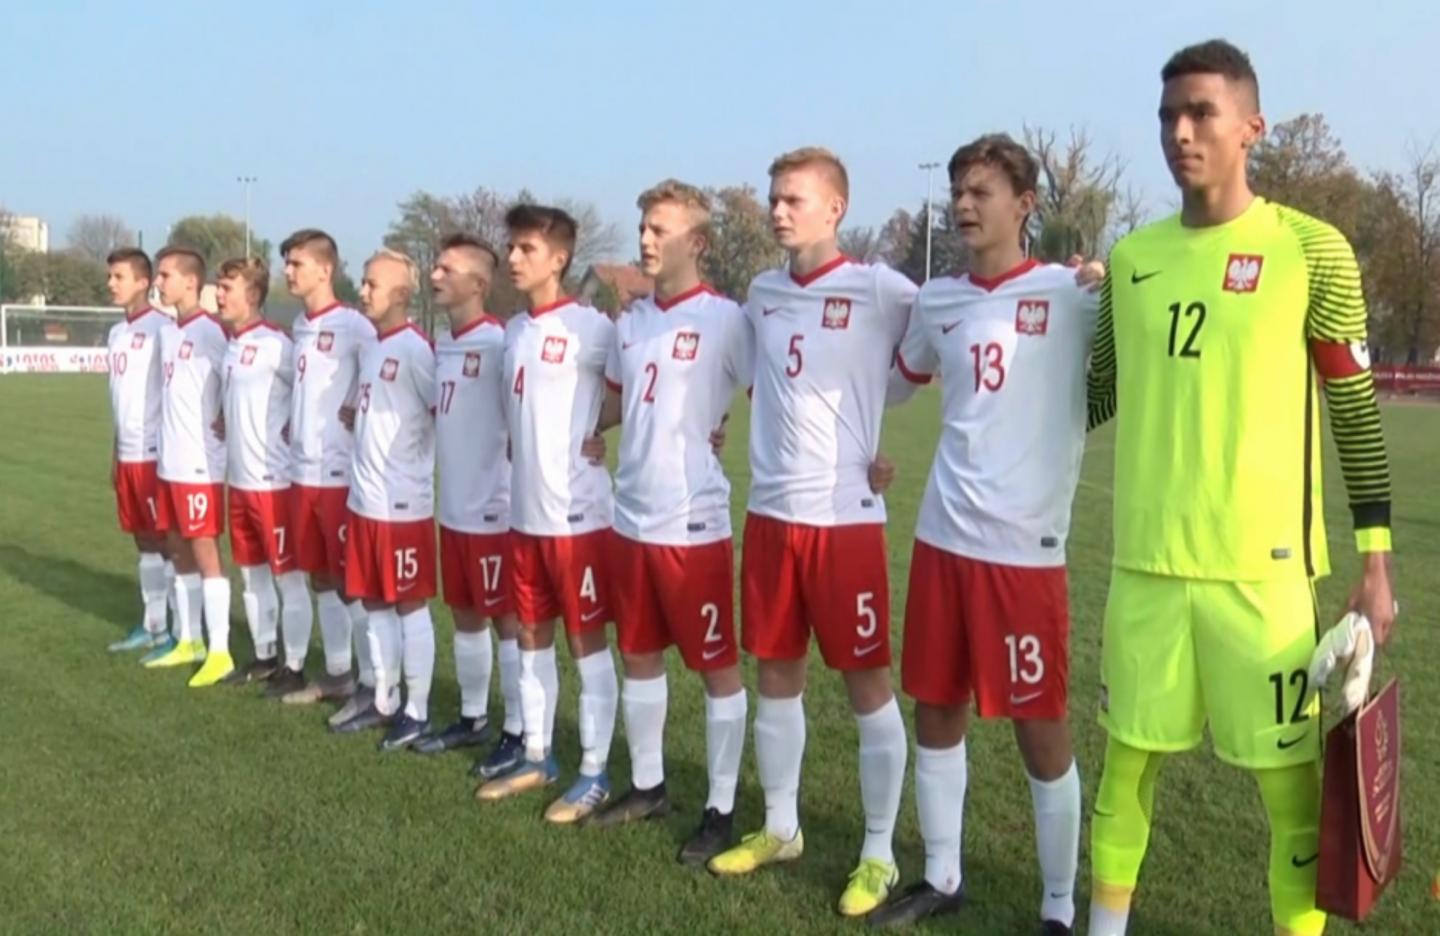 Reprezentacja Polski przed meczem Polska - Islandia 4:0 U-15 (25.10.2019). 